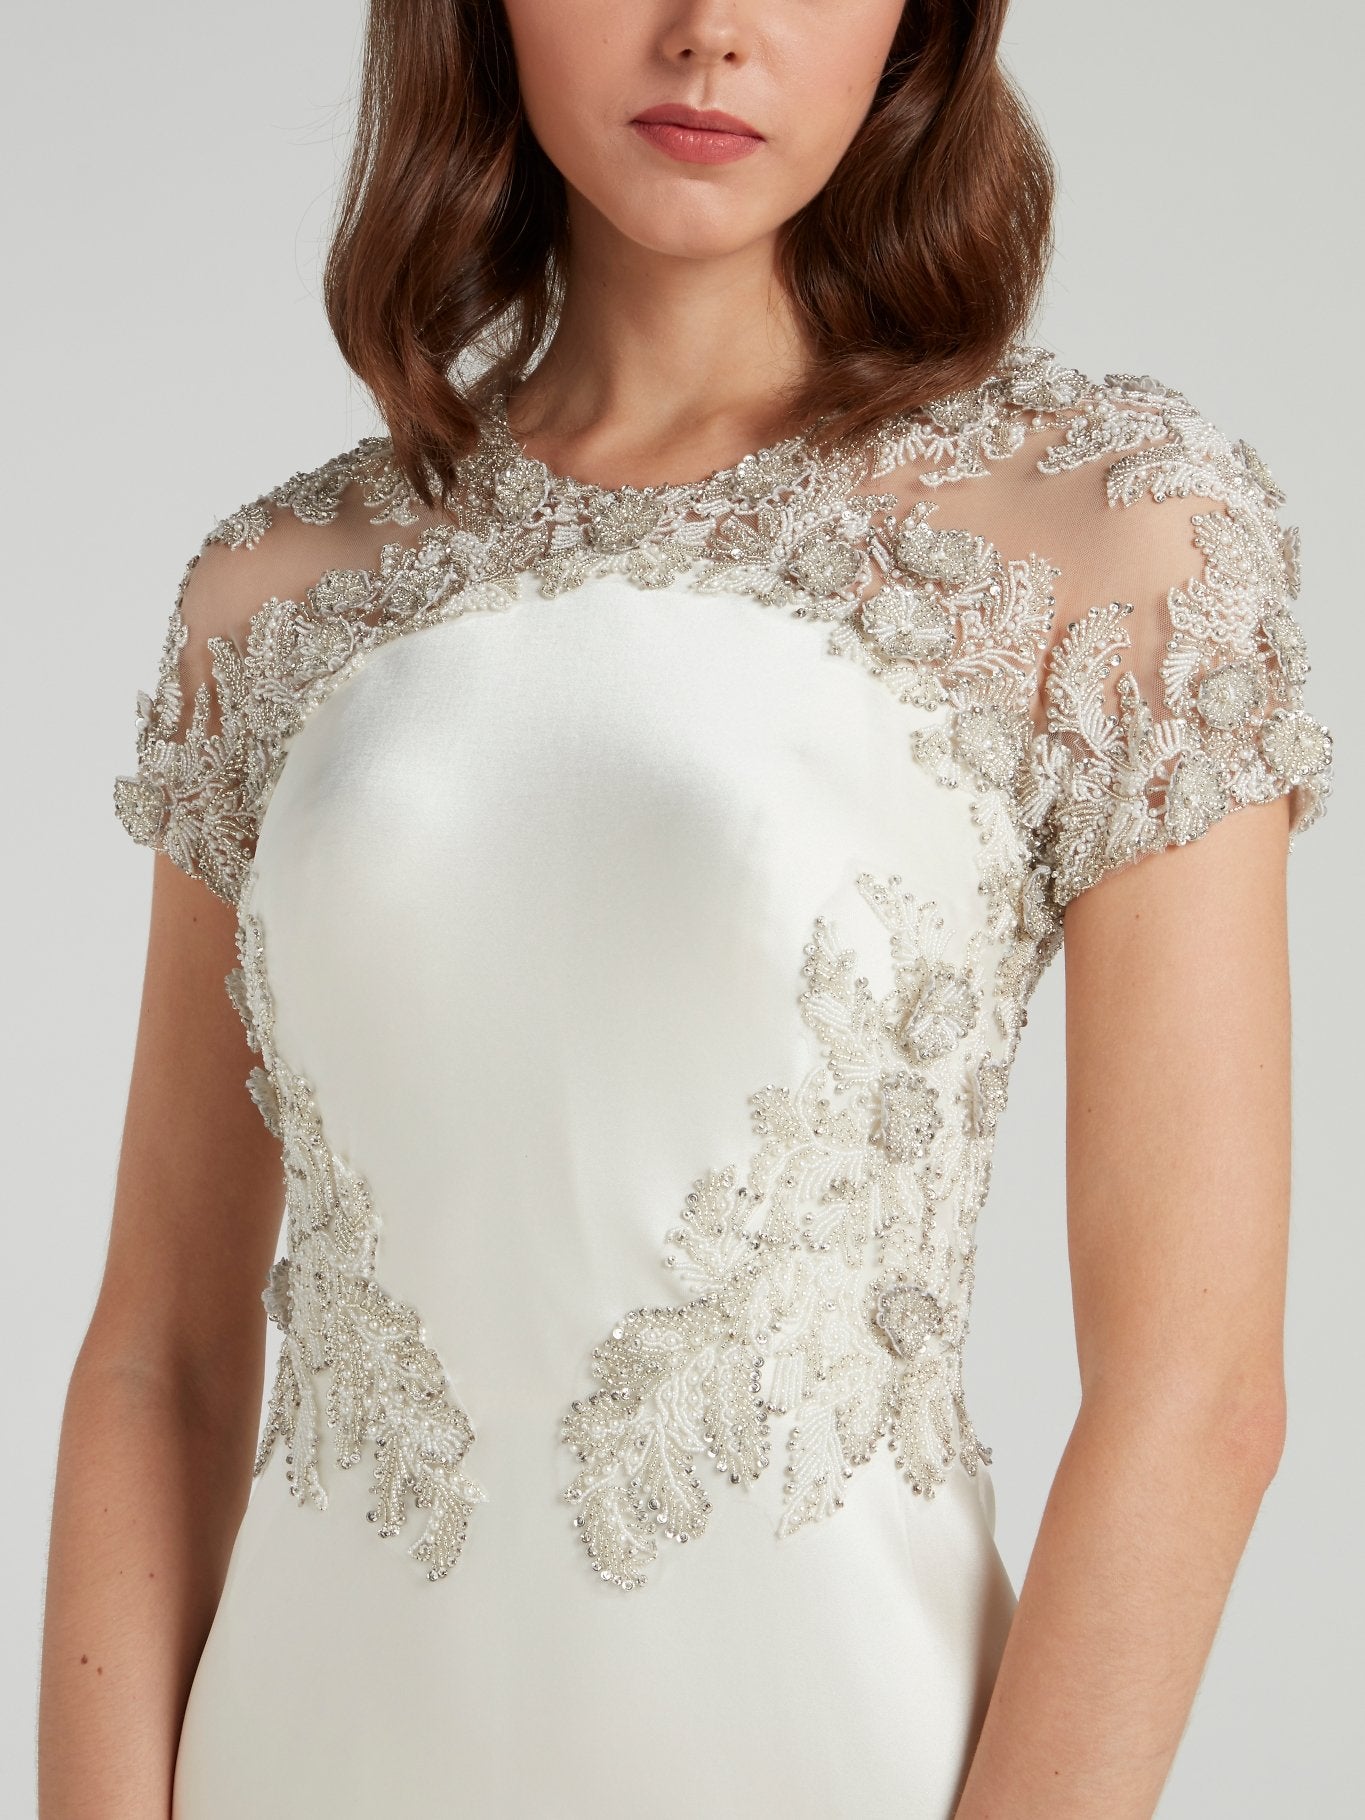 Свадебное платье с цветочным узором из страз и открытой спиной